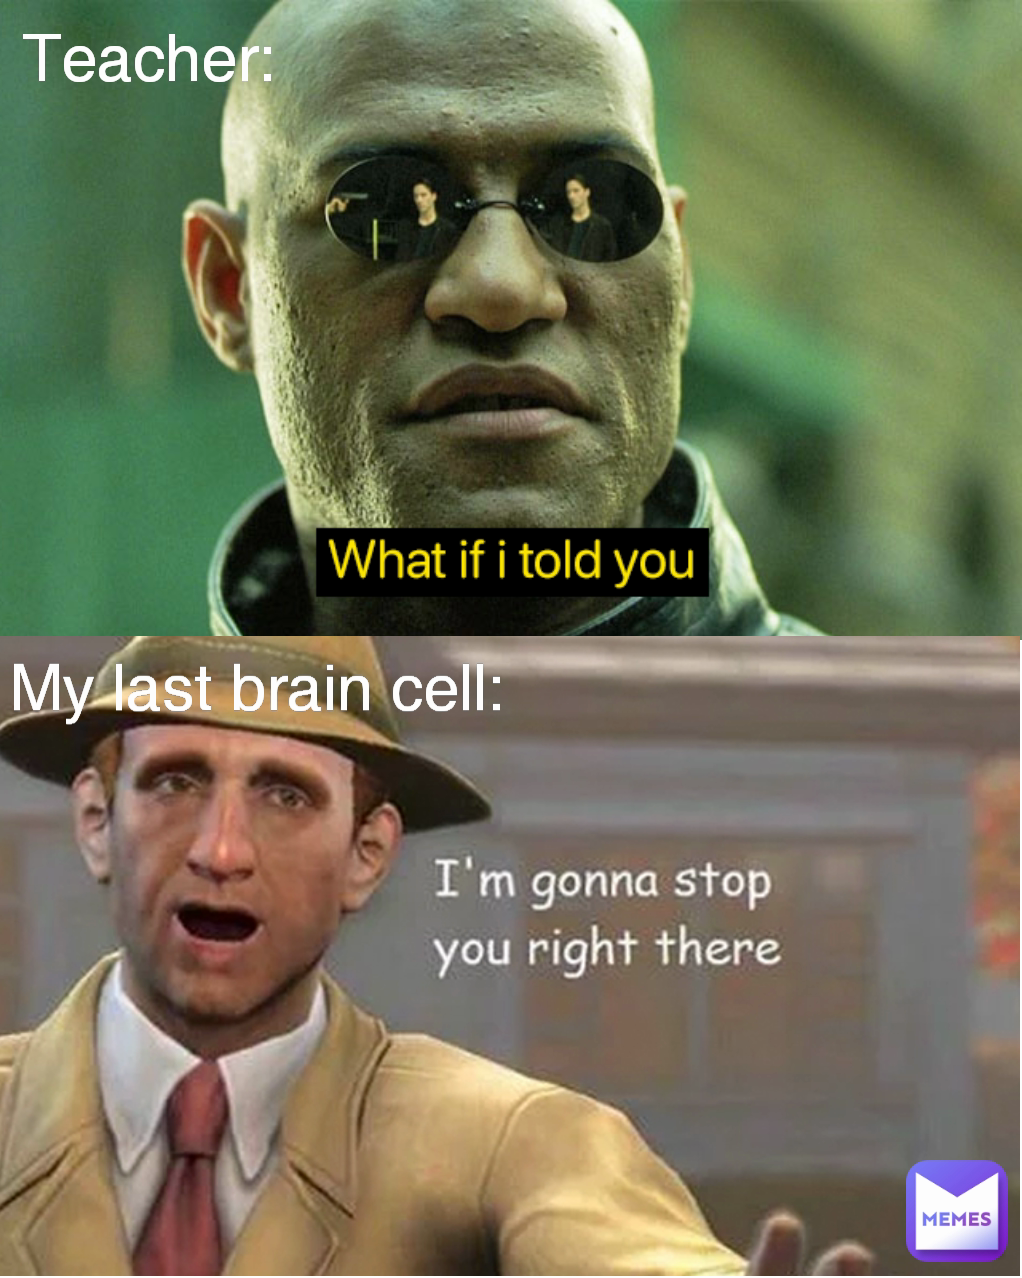 Teacher: My last brain cell: